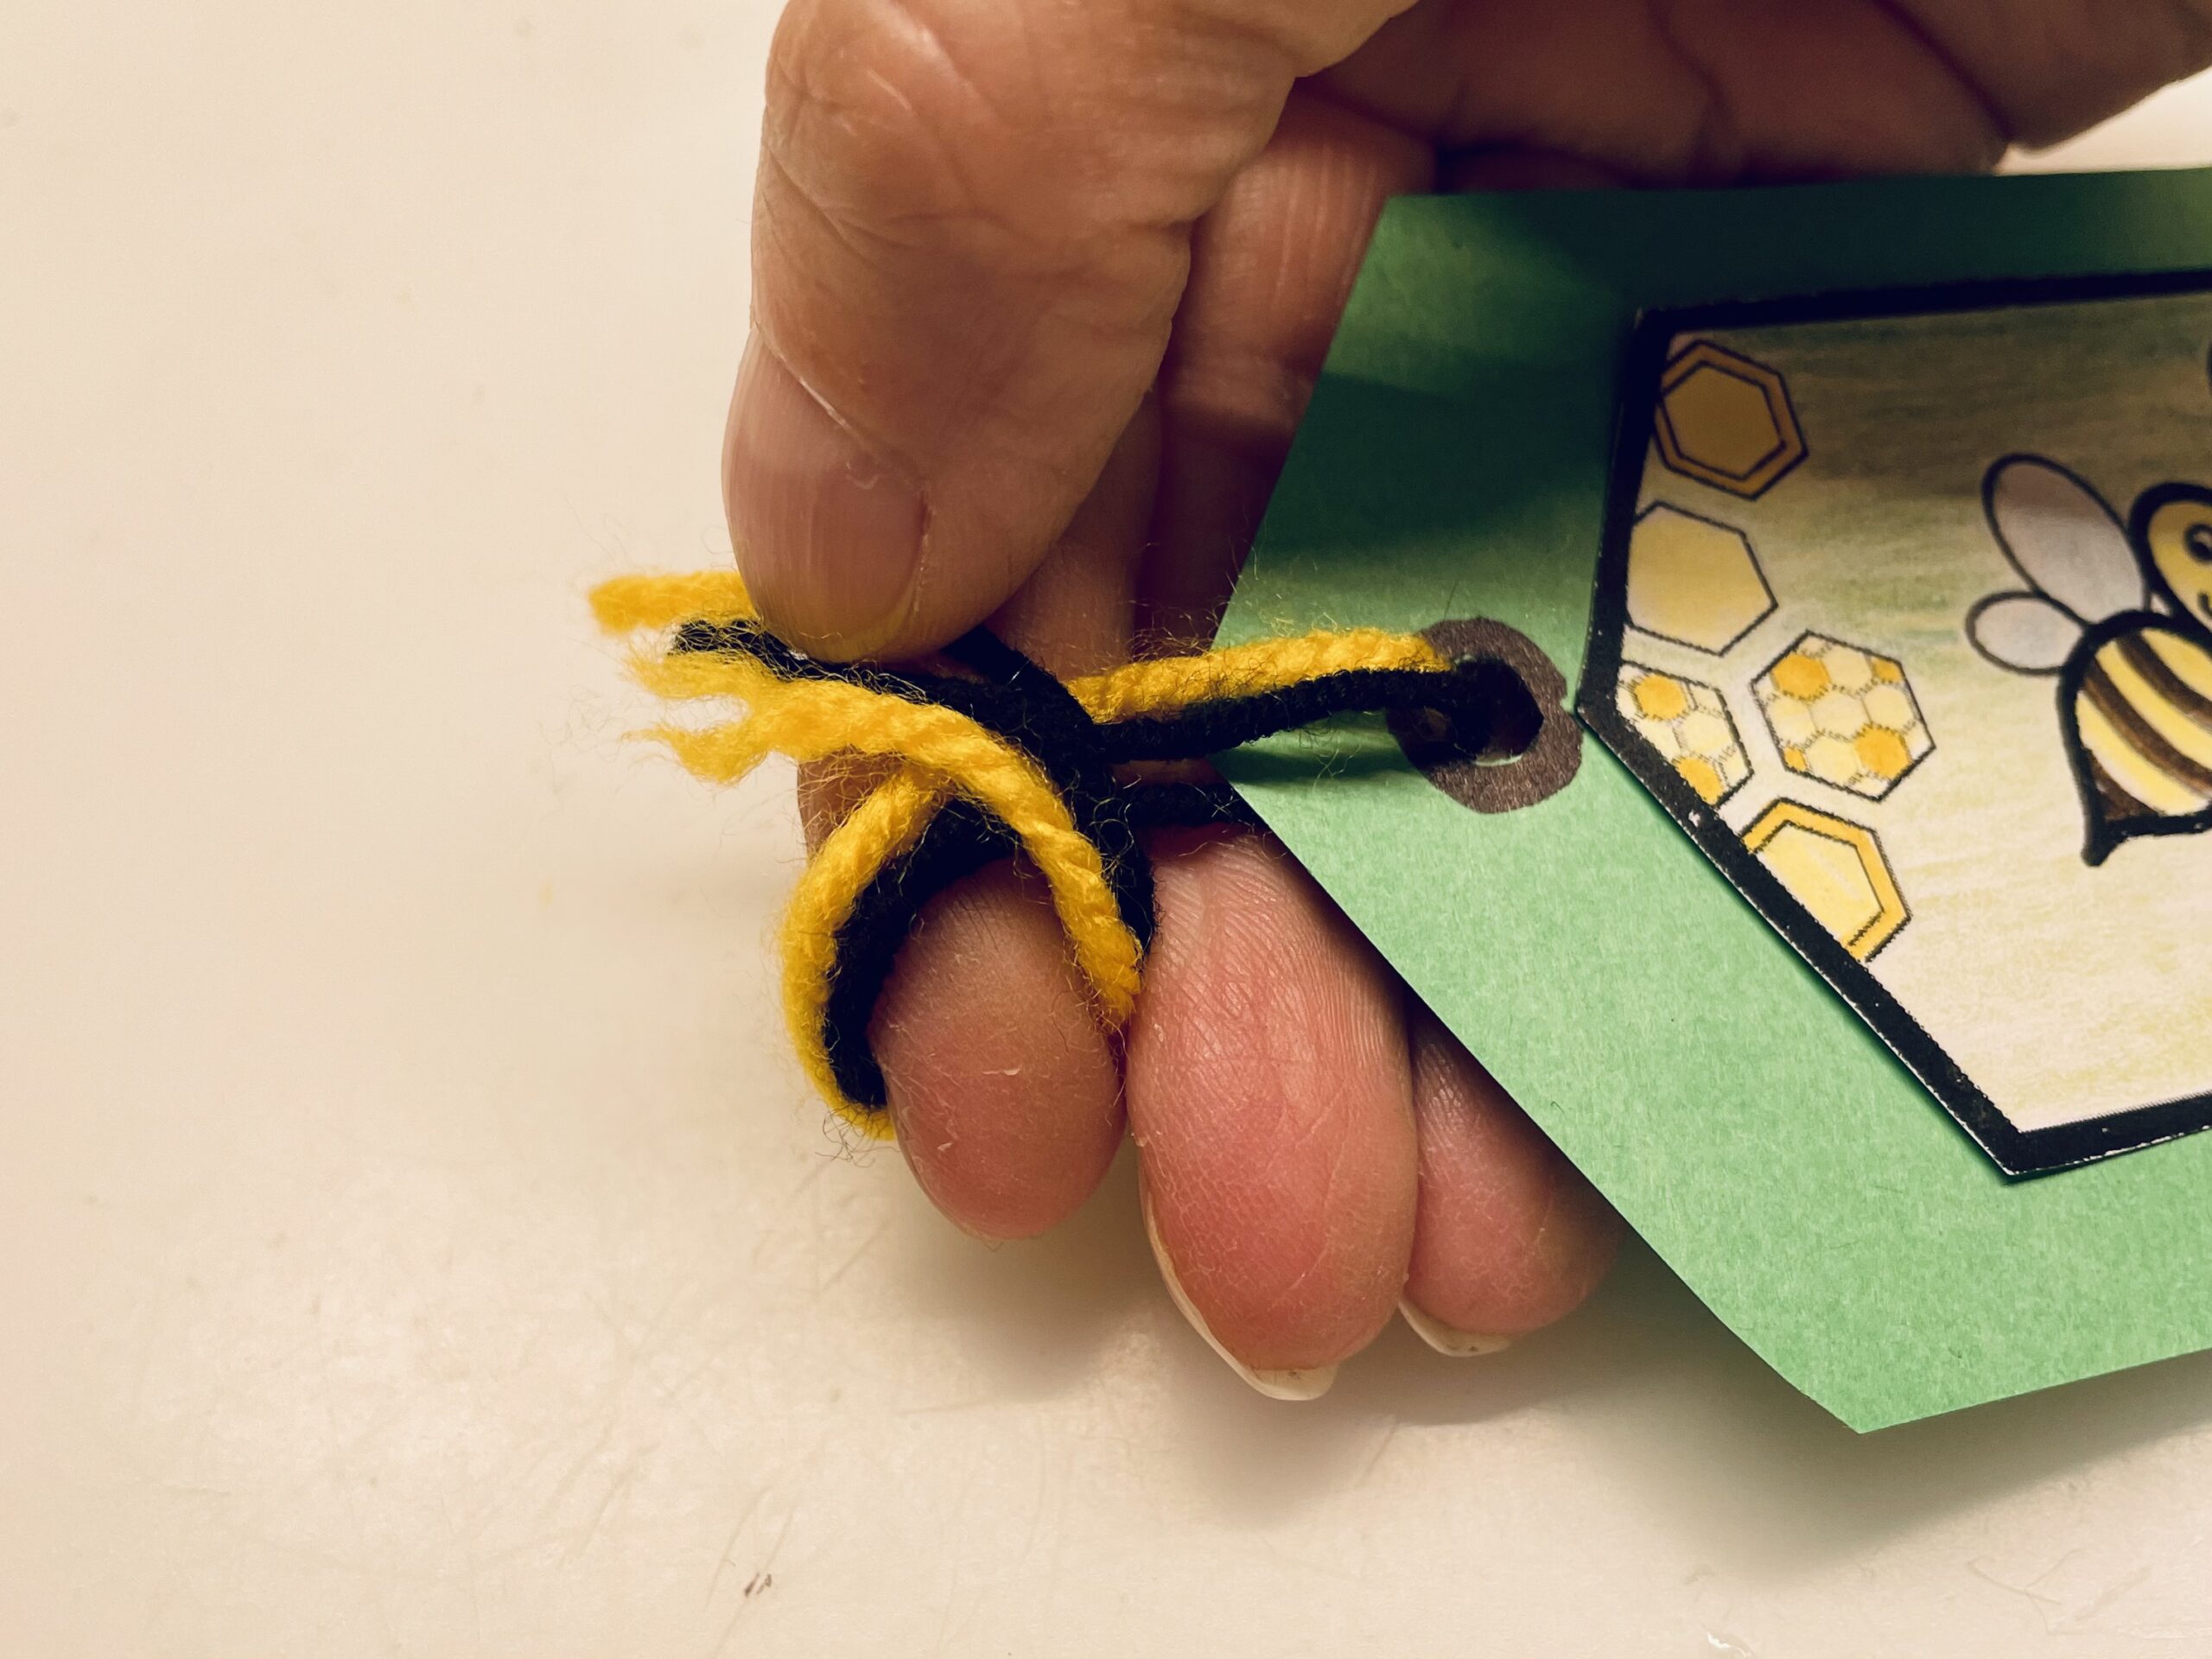 Bild zum Schritt 8 für das Bastel- und DIY-Abenteuer für Kinder: 'Dann legt ihr die Wollfäden als Schlaufe um euren Zeigefinger.'